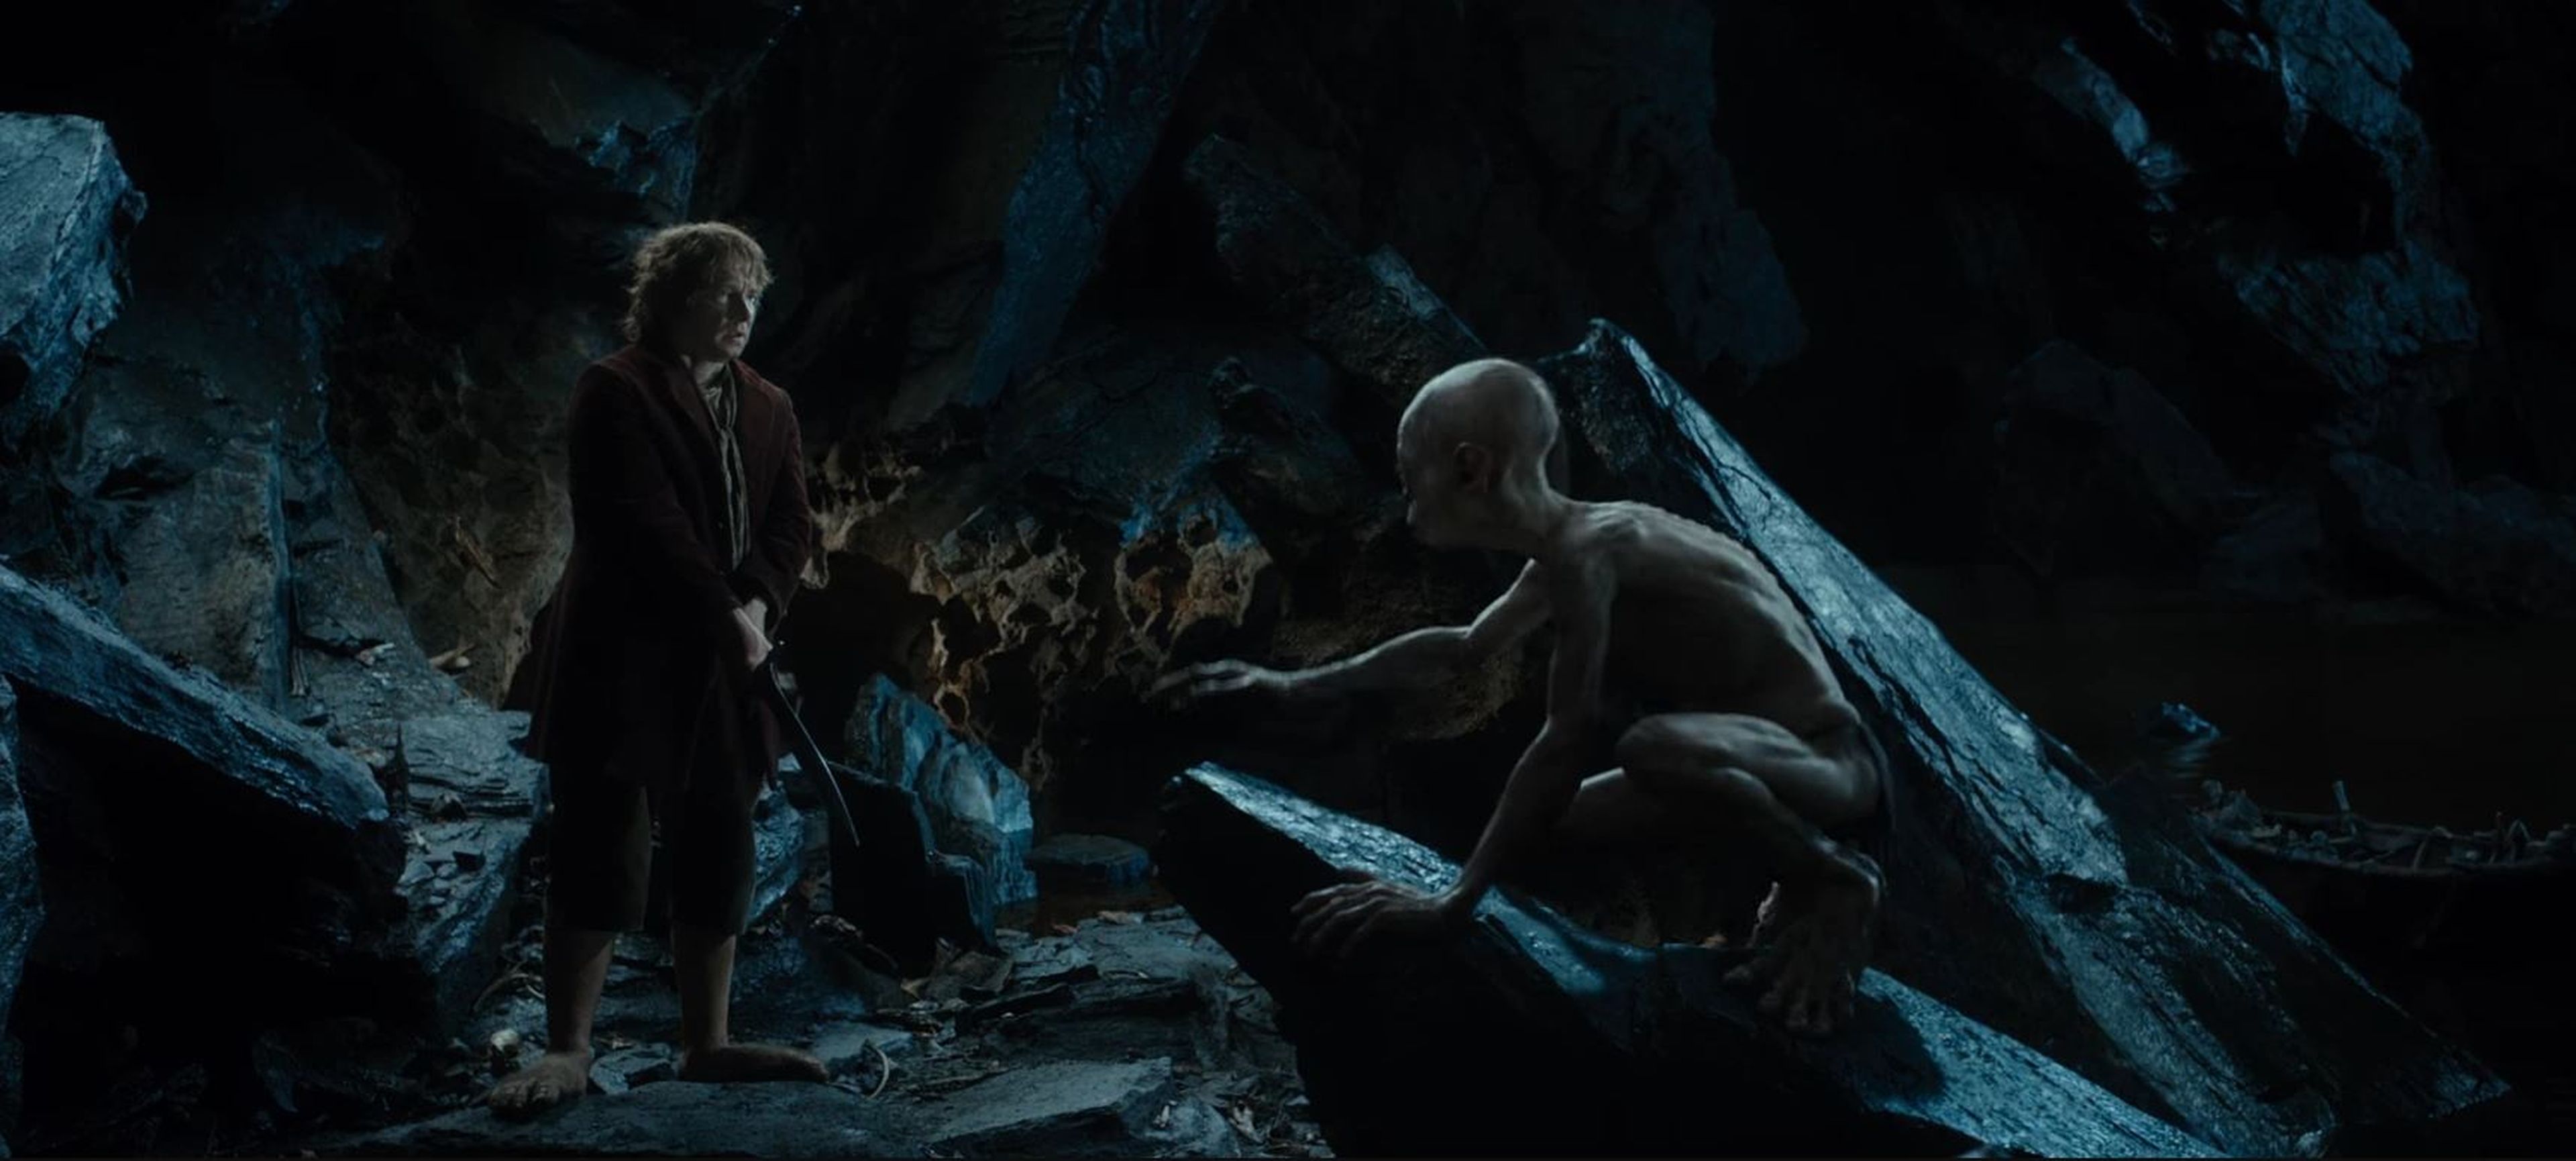 Bilbo y Gollum, a escasos segundos de enzarzarse en un duelo de acertijos en la oscuridad.